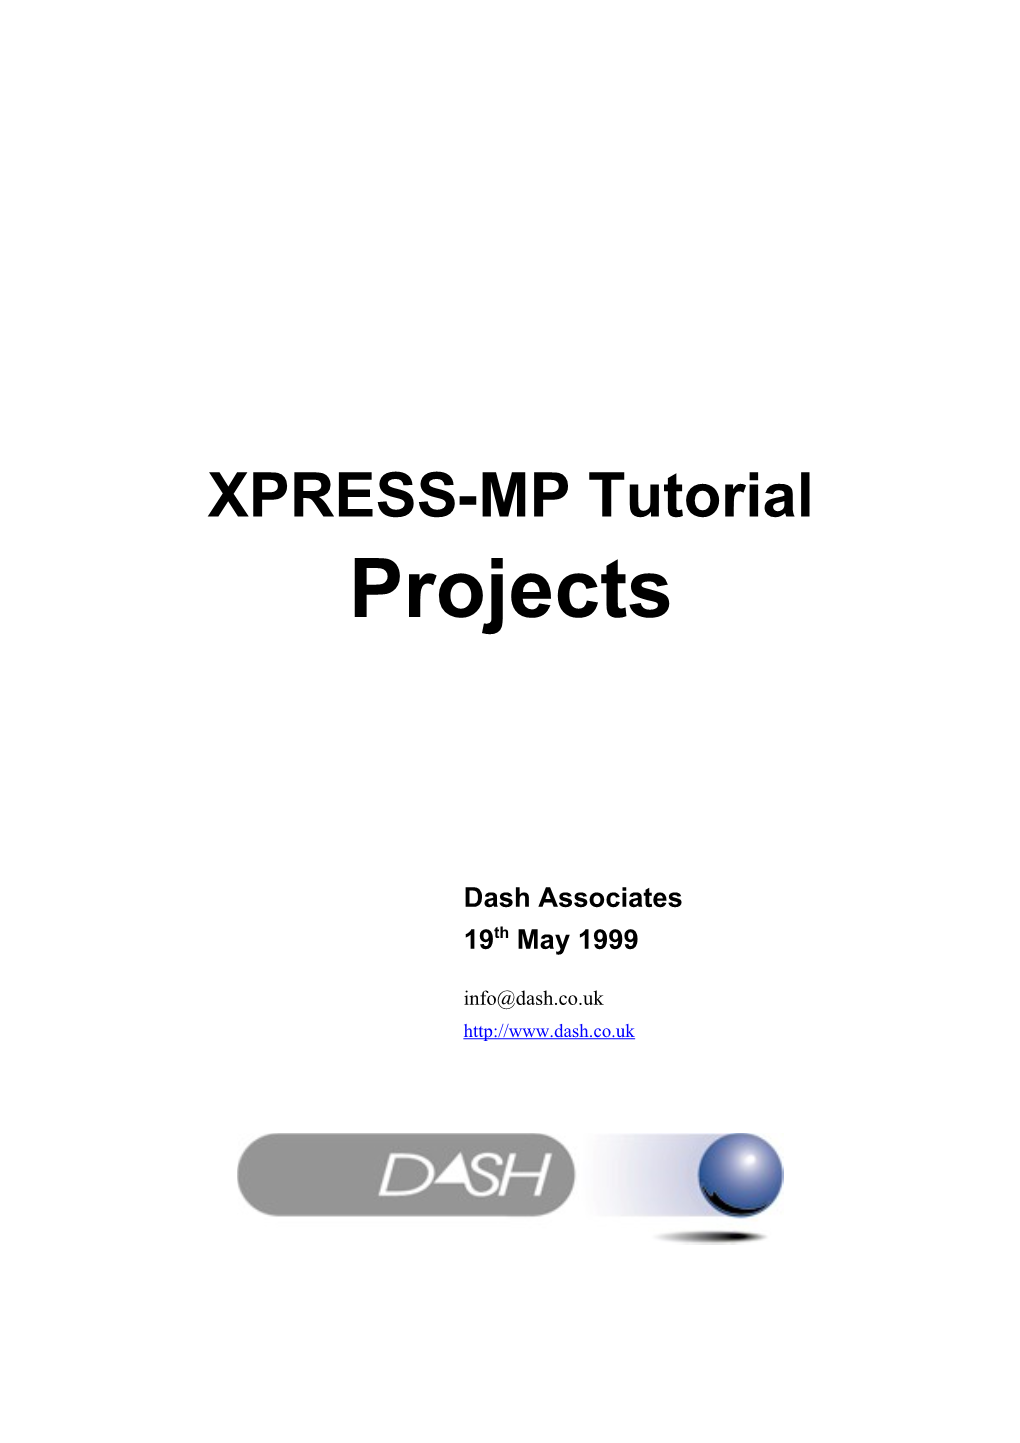 XPRESS-MP Course